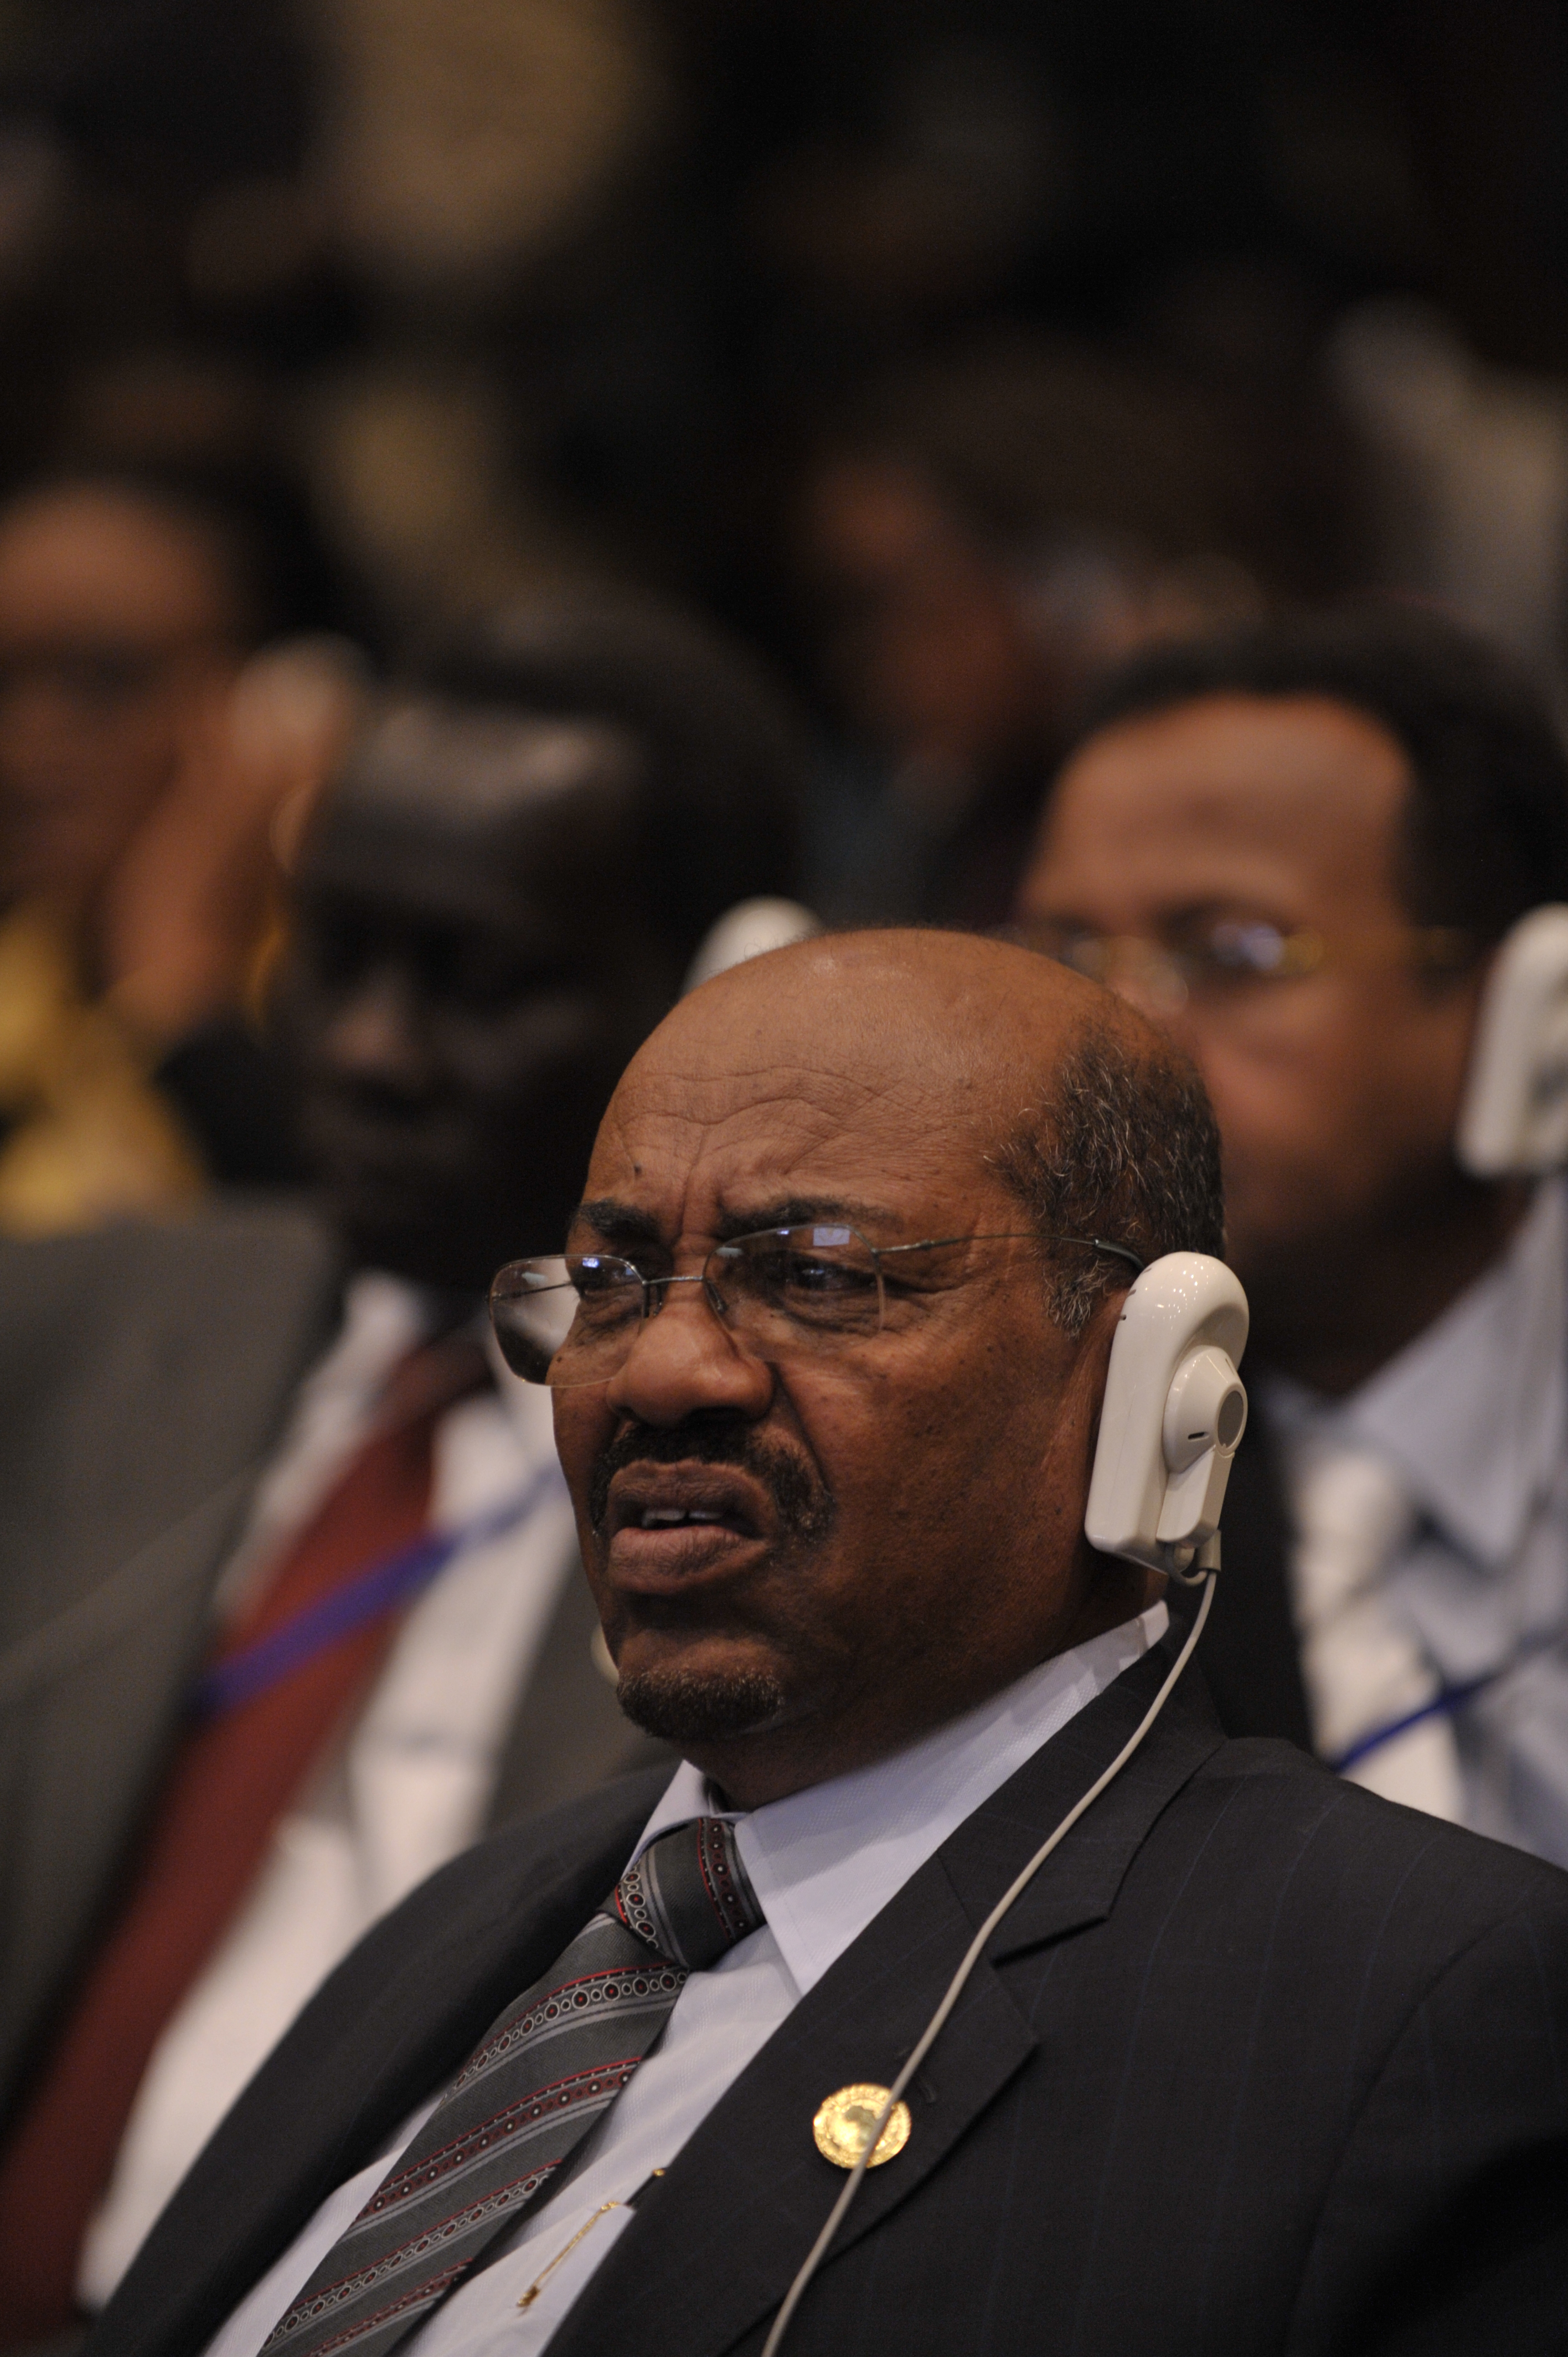 Omar al-Bashir, 12th AU Summit, 090202-N-0506A-724